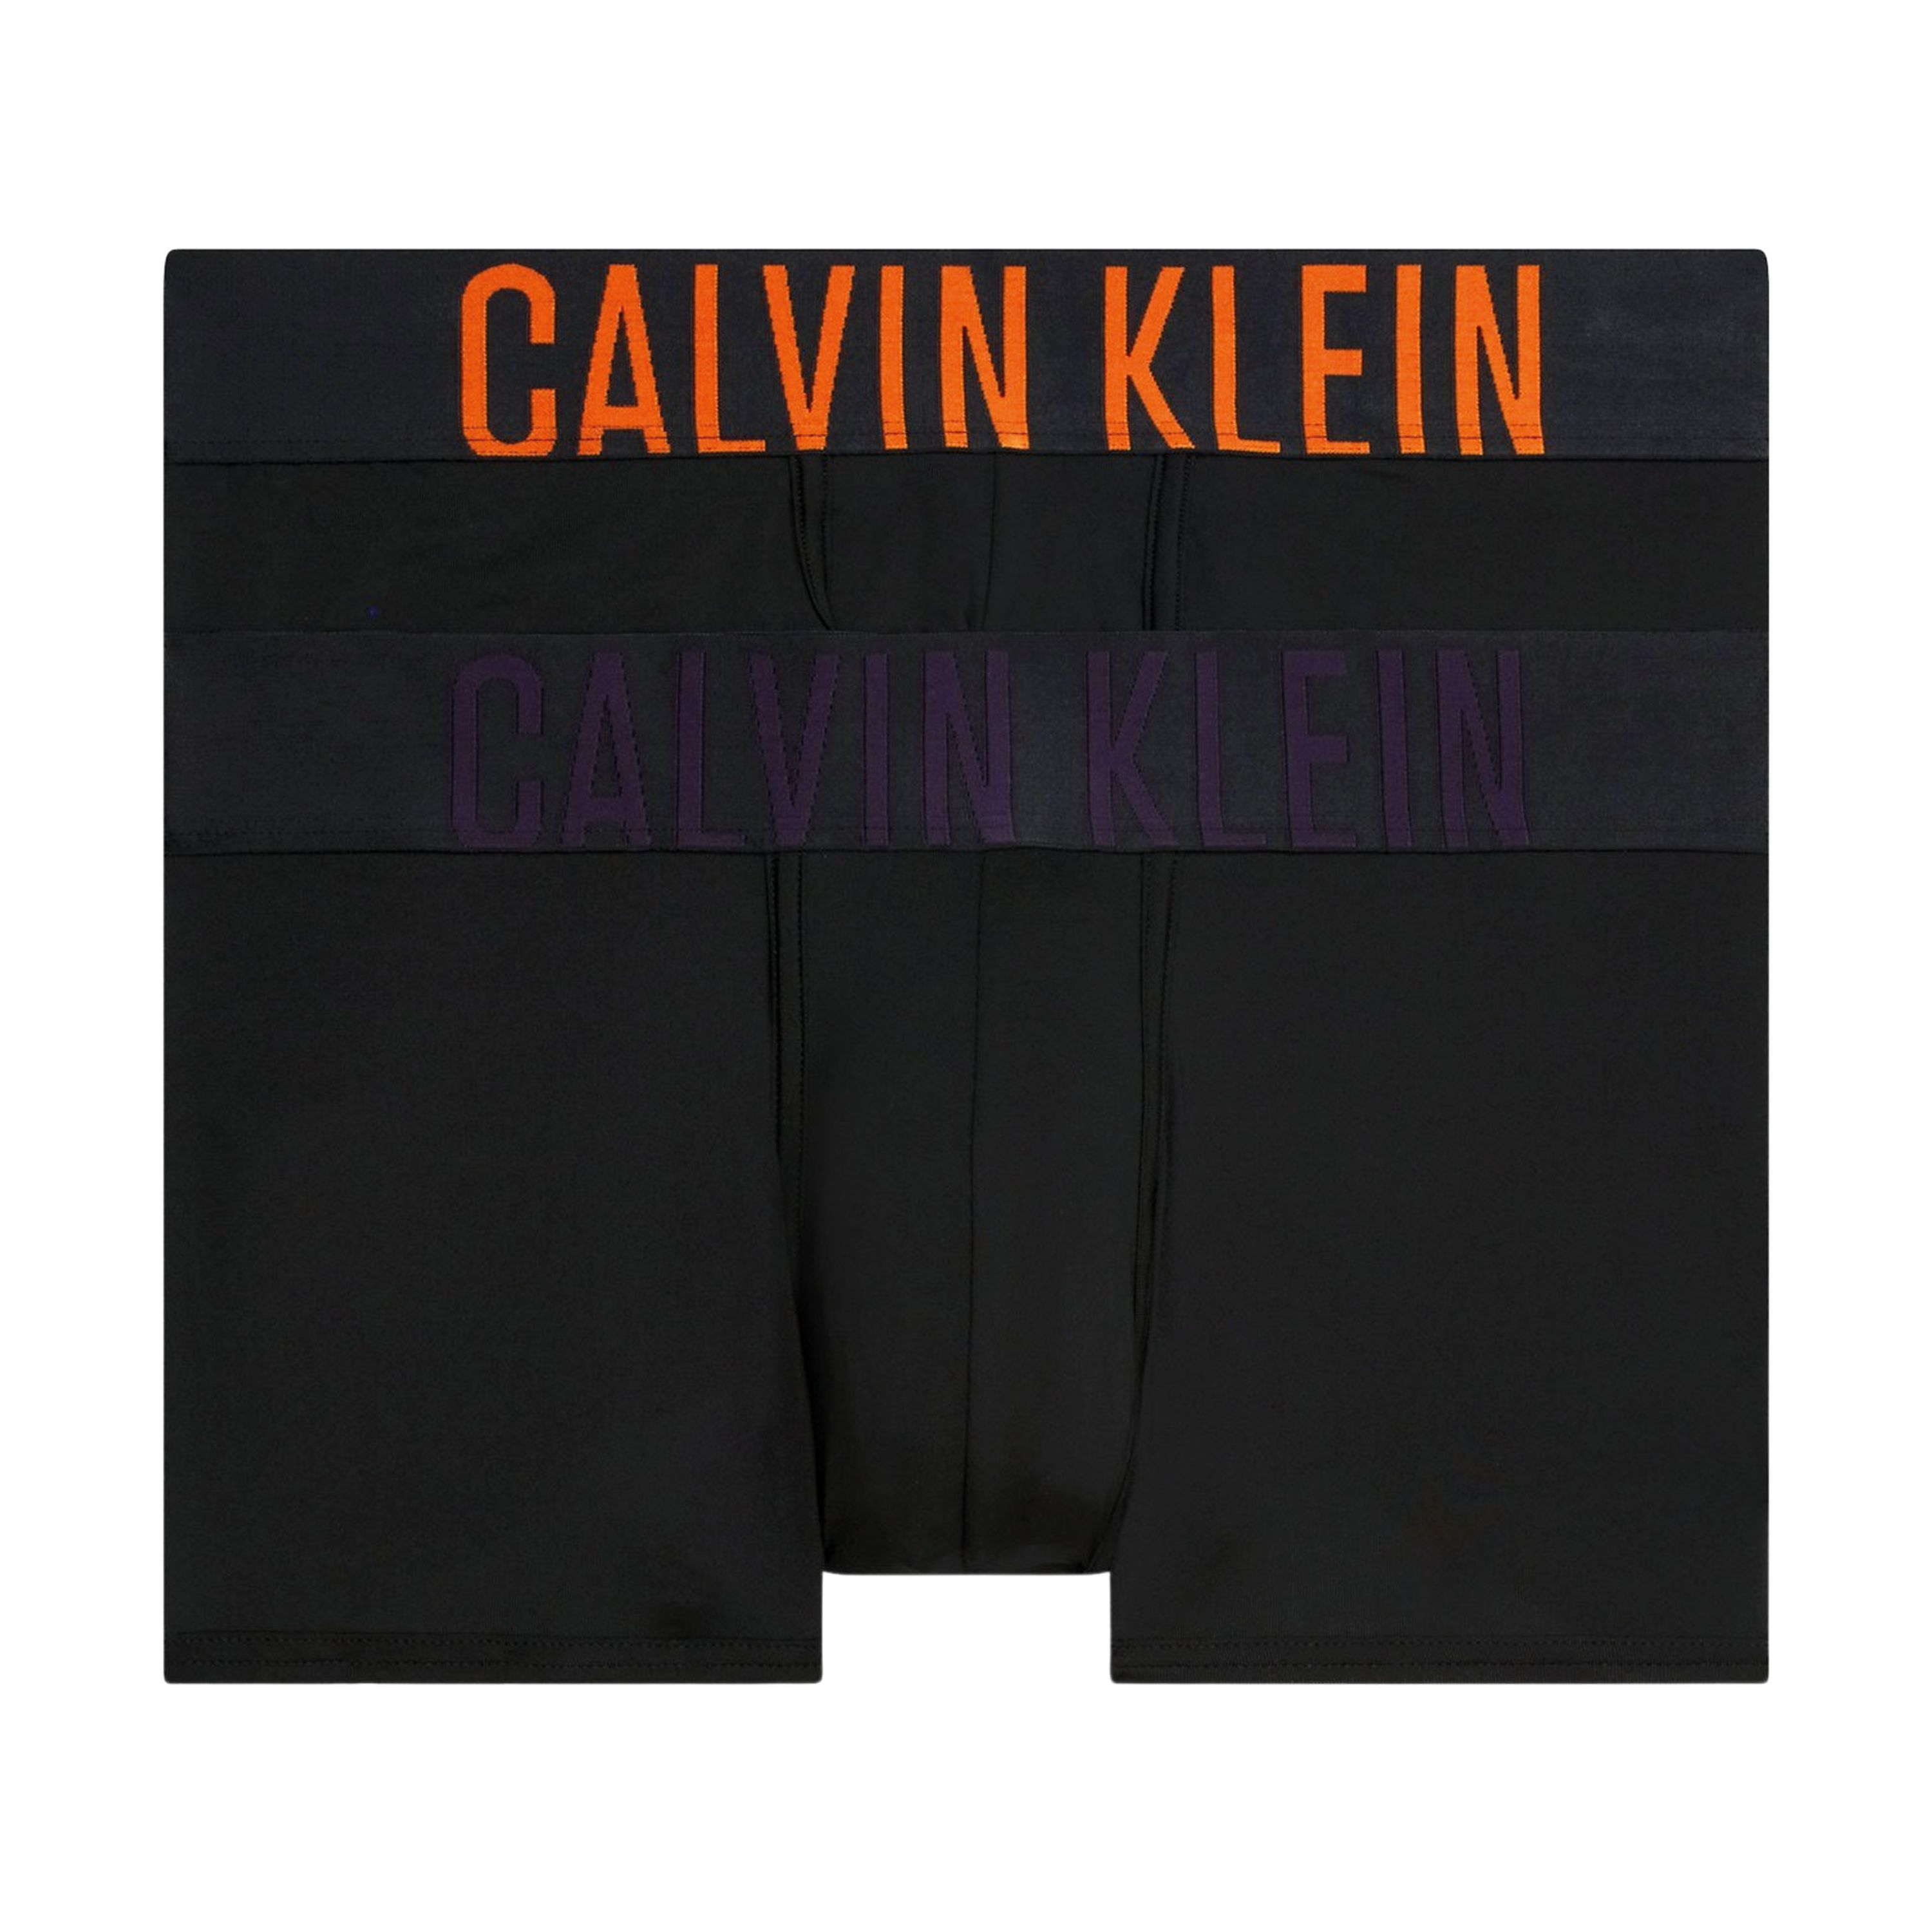 Calvin Klein Underwear Boxershort met elastische band met label in een set van 2 stuks